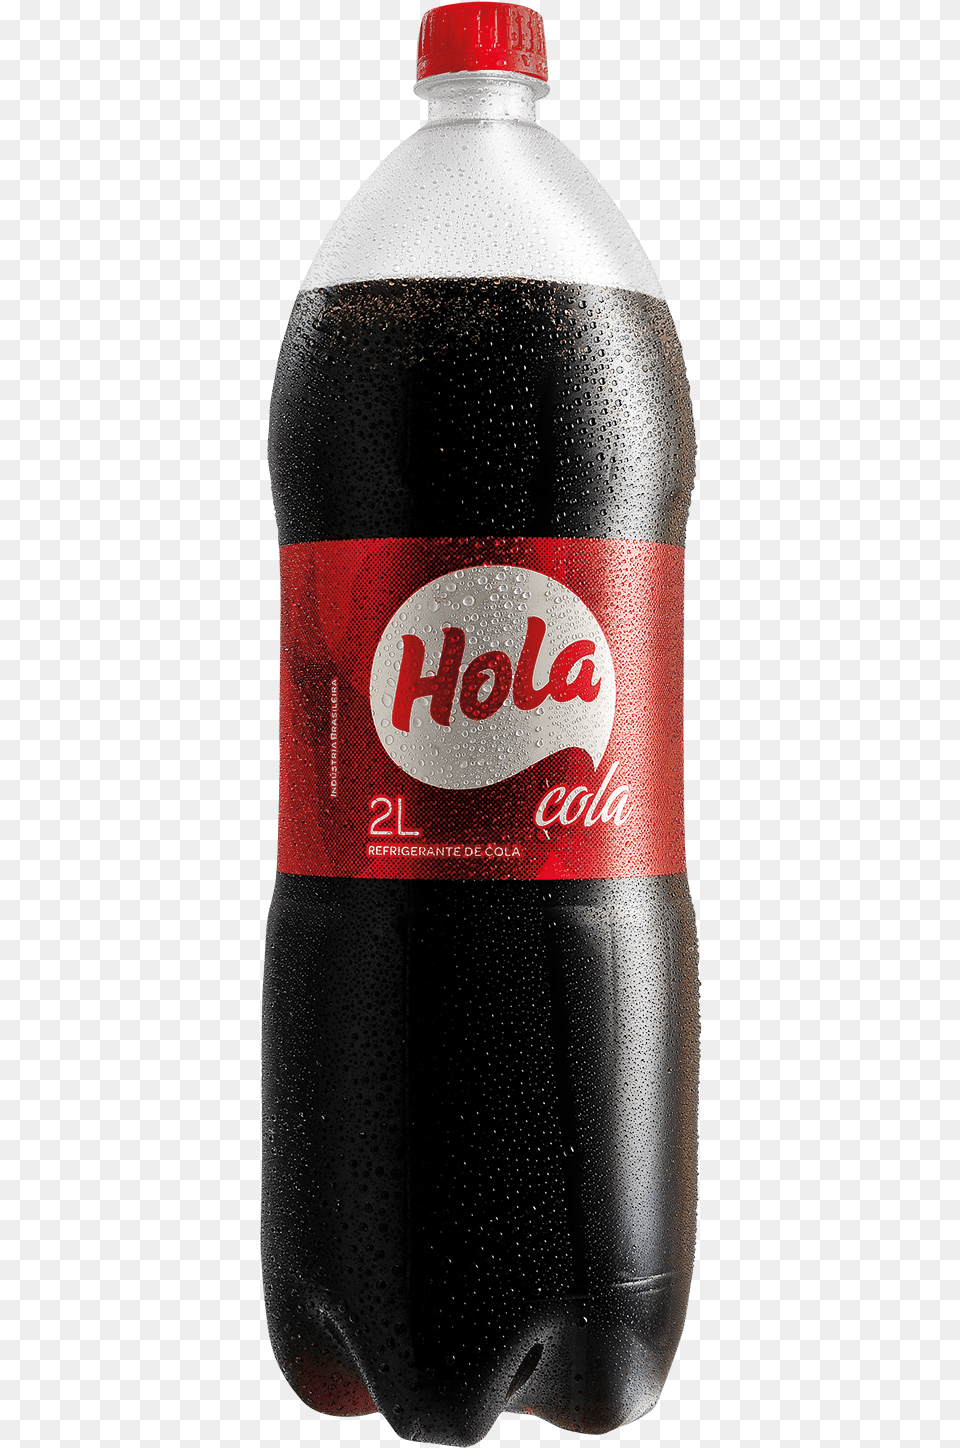 Hola Cola Mockup Refrigerante Hola, Alcohol, Beer, Beverage, Coke Free Png